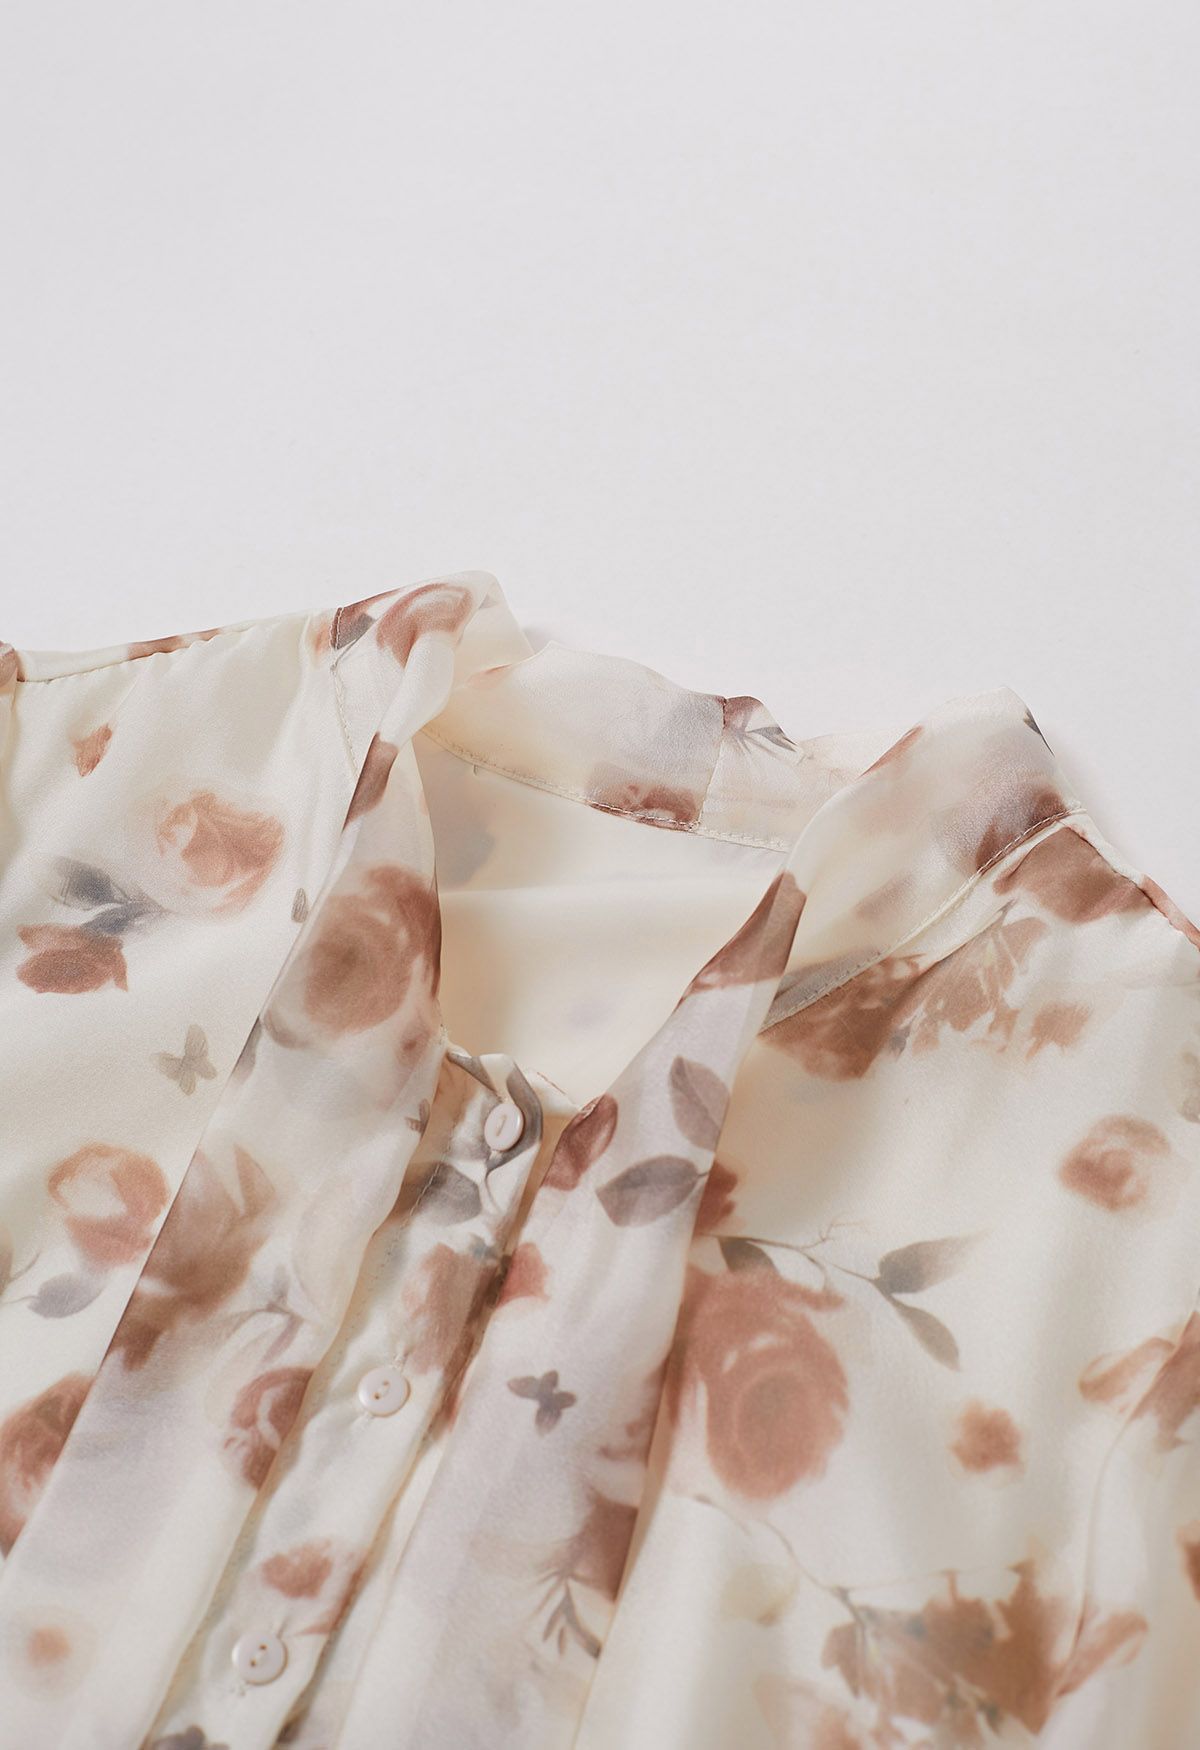 Fall-Inspired Rose Bowknot Sheer Shirt